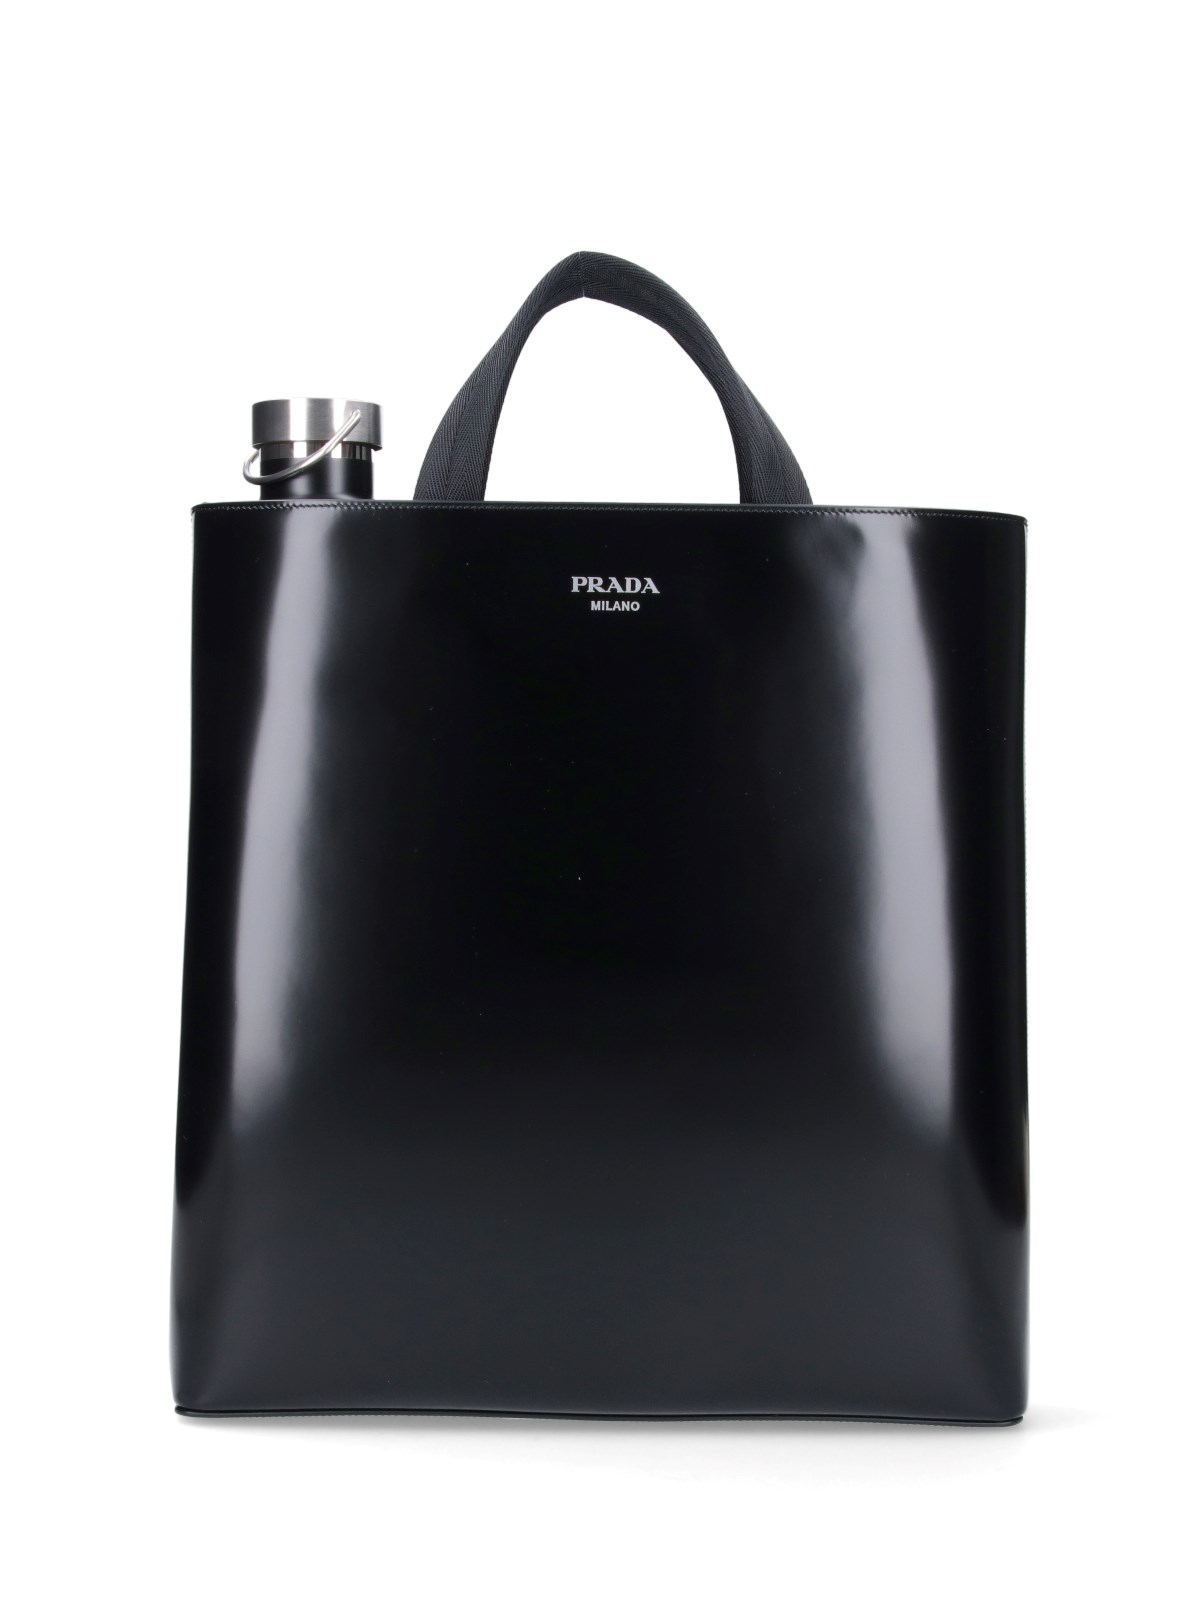 Prada Tote Bag With Bottle In Black  